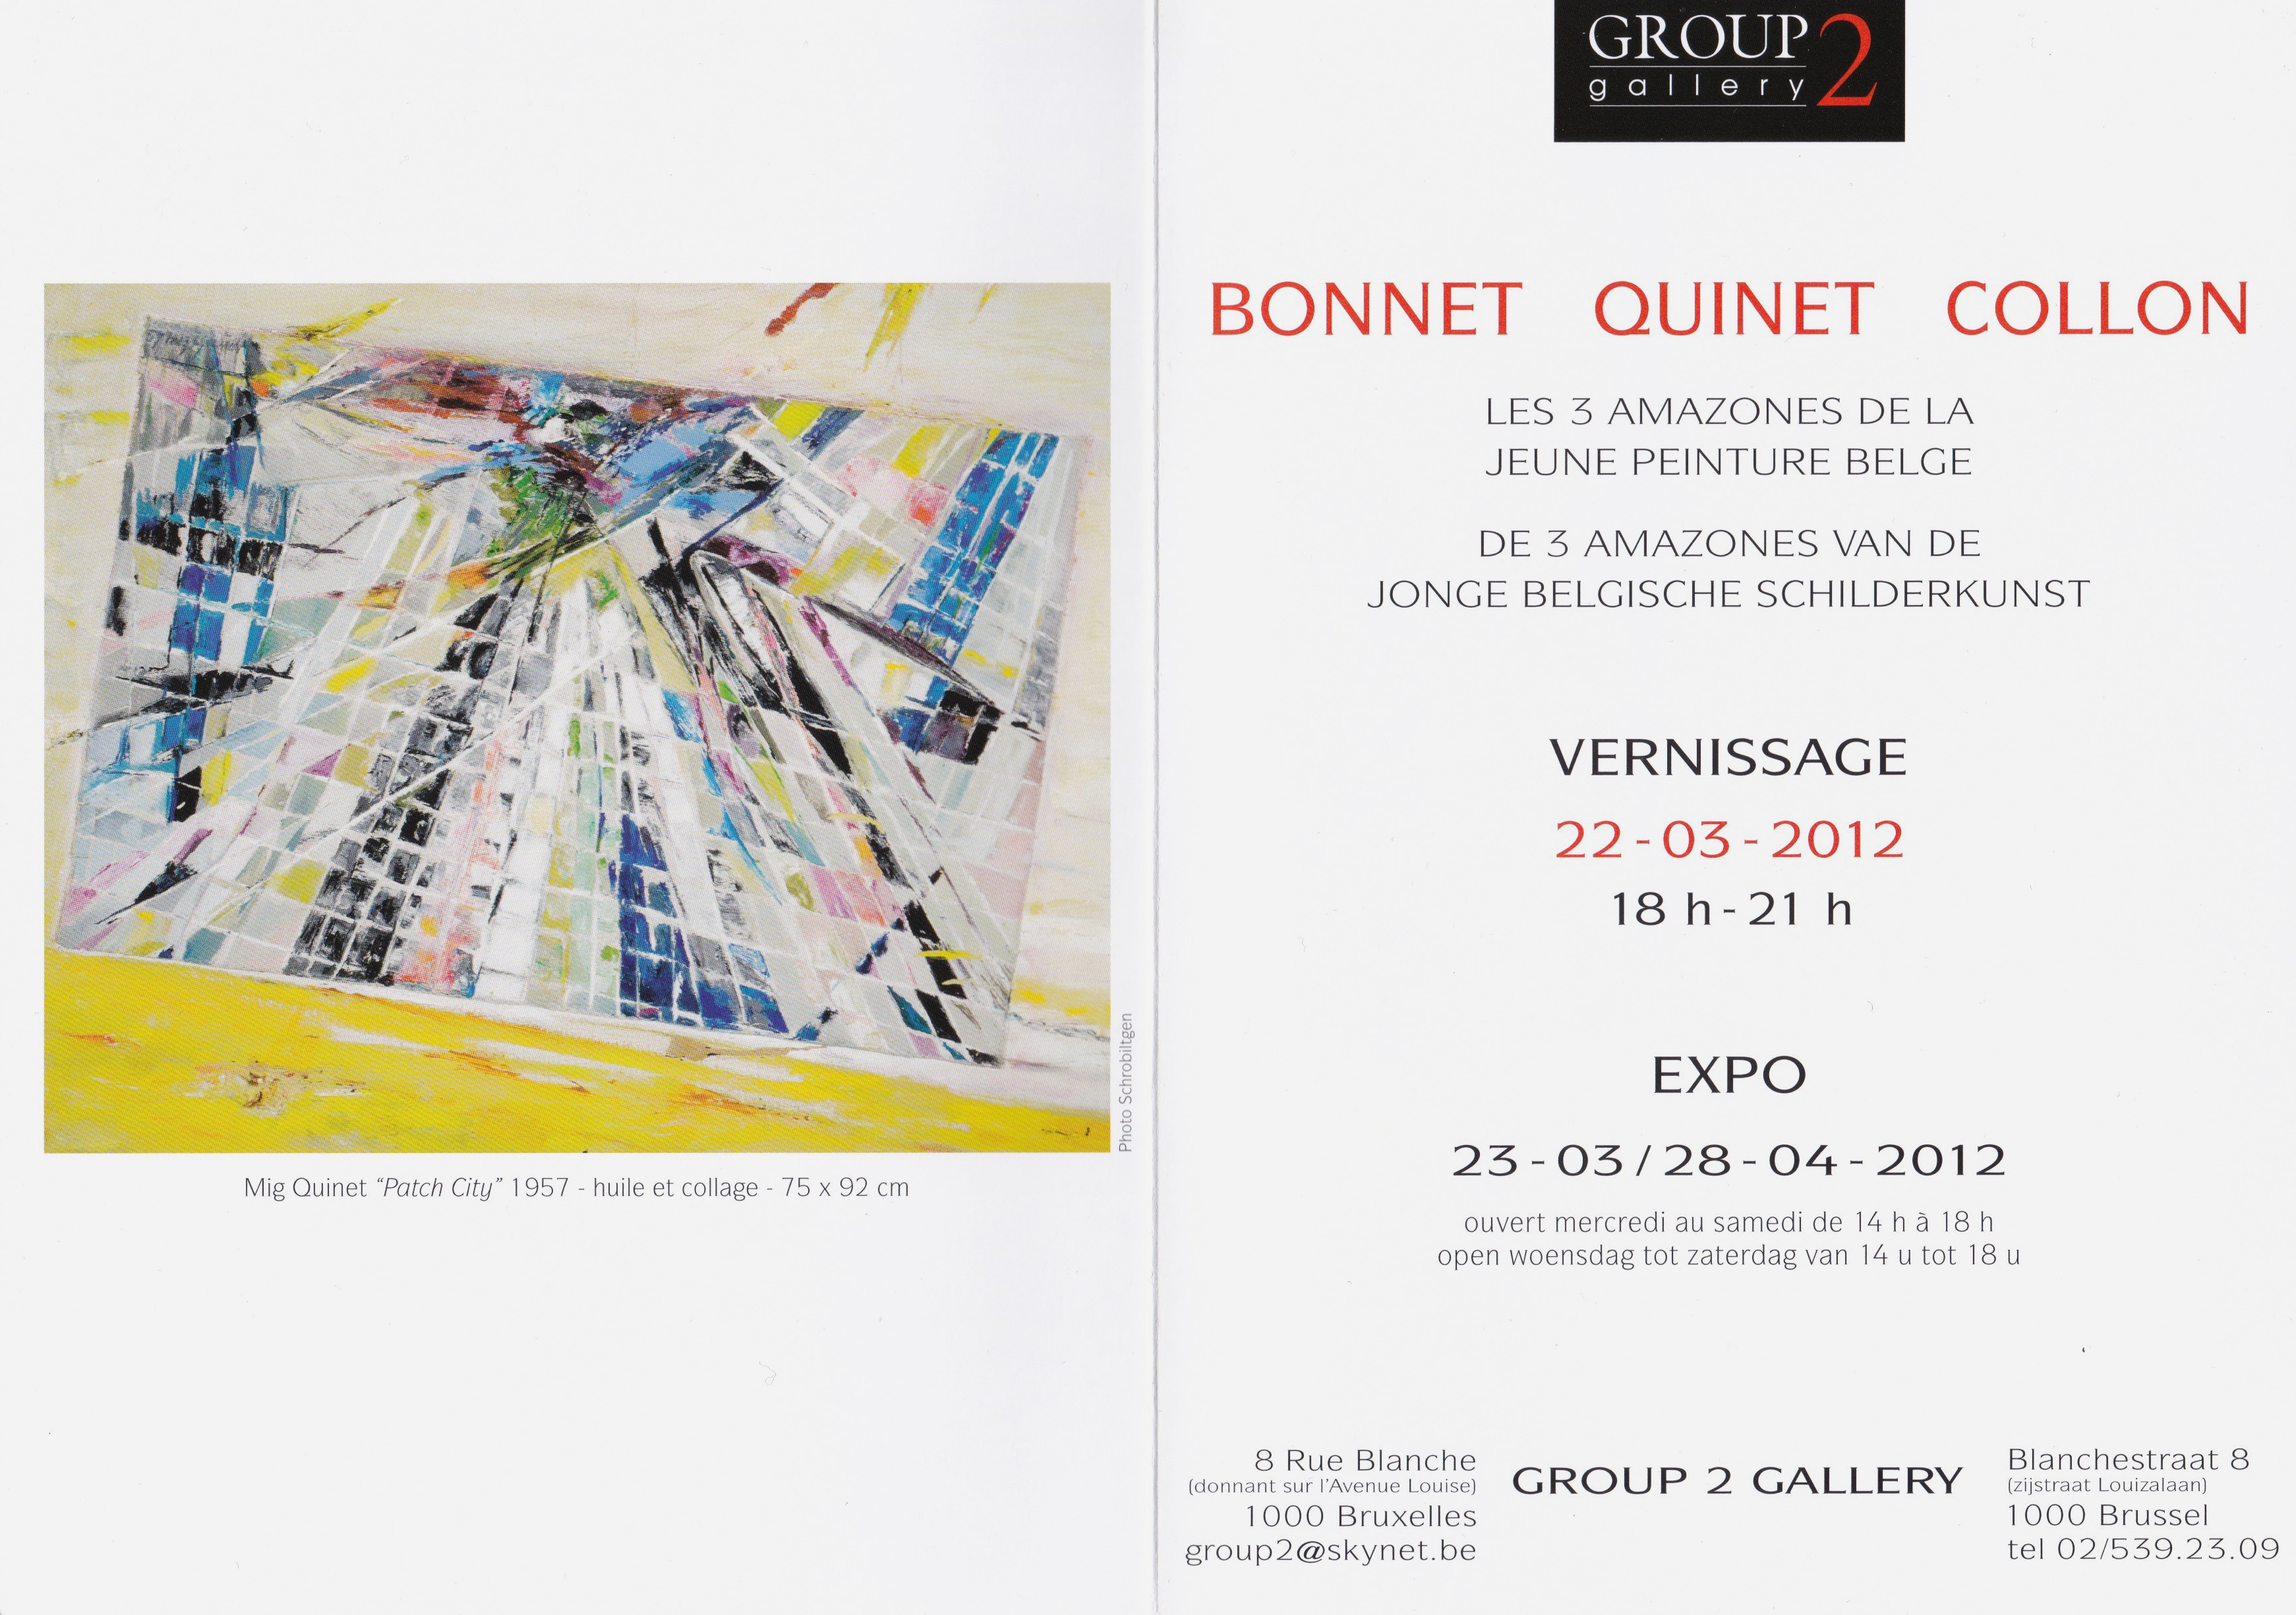 Anne Bonnet Mig Quinet Odette Collon exposition group 2 gallery Bruxelles, 2012